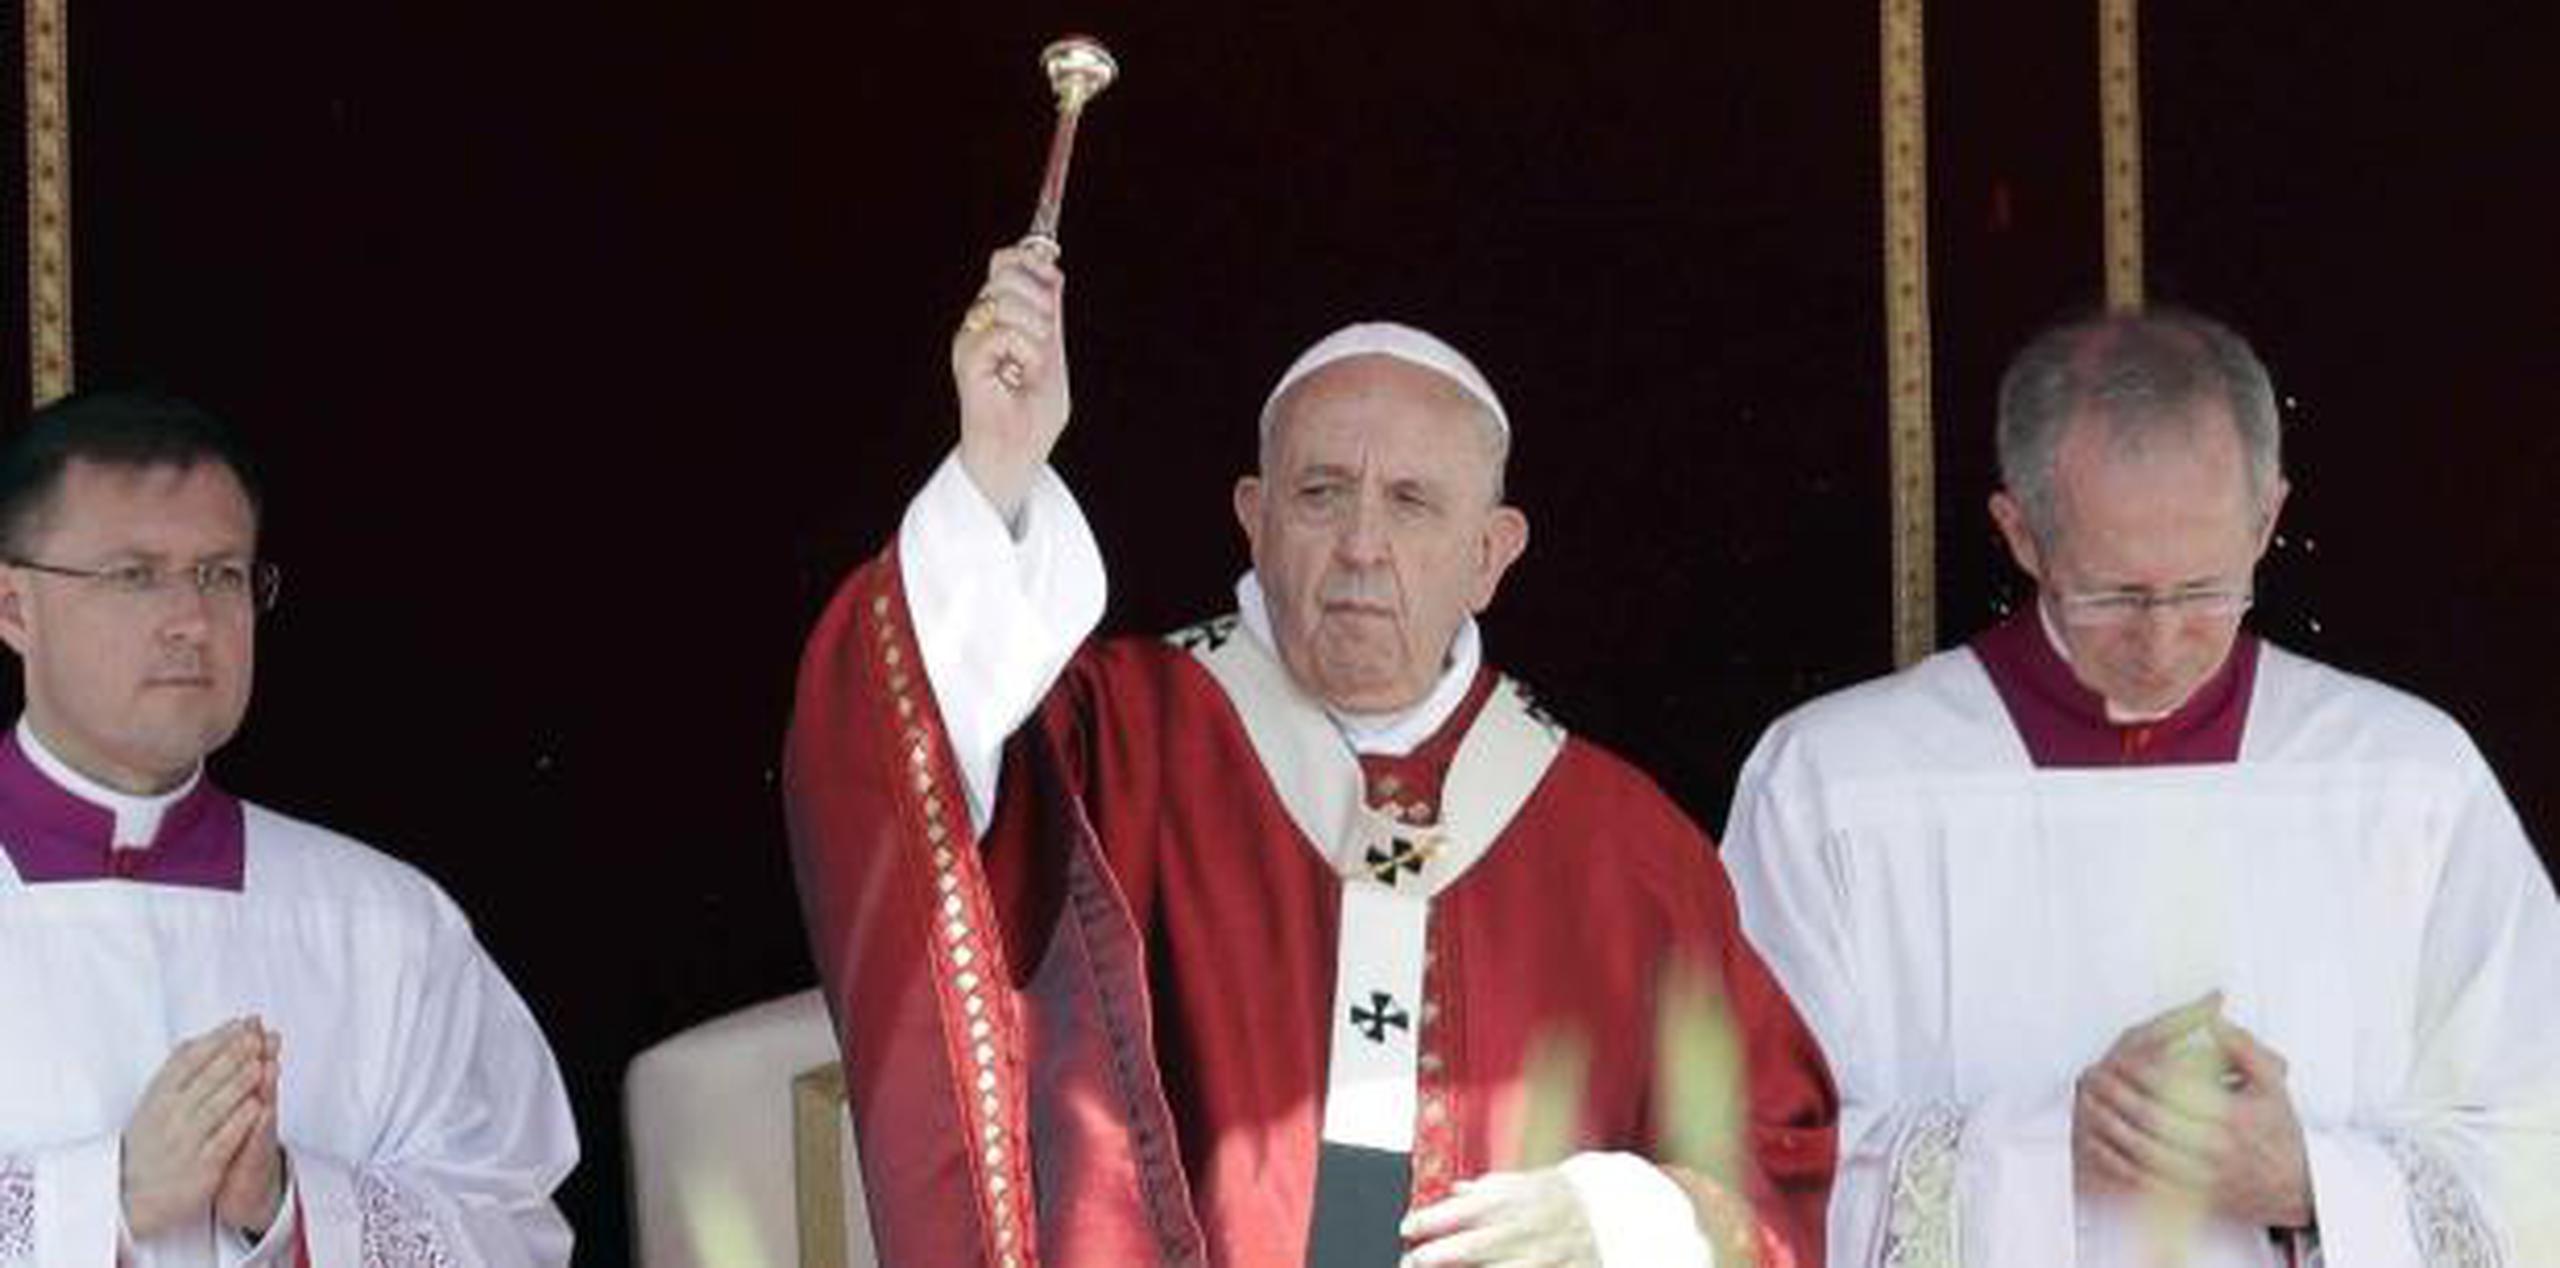 El papa Francisco, el primer pontífice latinoamericano de la historia, se ha centrado en las dificultades sacramentales y medioambientales de las comunidades amazónicas. (AP)

